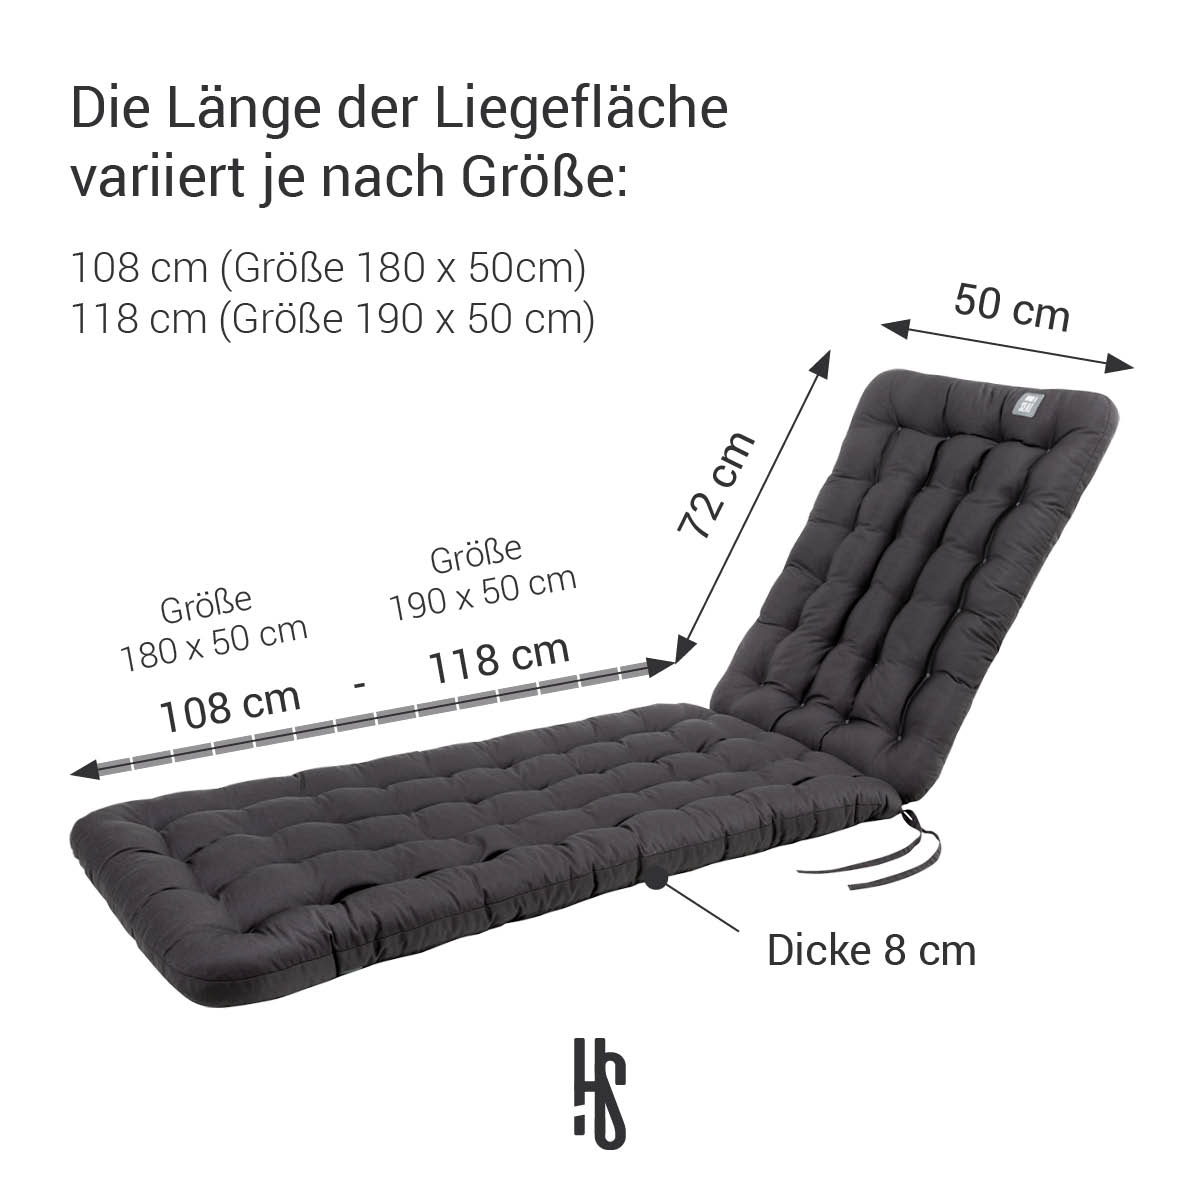 Deckchair Auflage Grau in 180x50 cm / 190x50 cm, Polsterung 8 cm Dick mit Rückenteil 72 cm lang | orthopädische Liegefläche | HAVE A SEAT Living